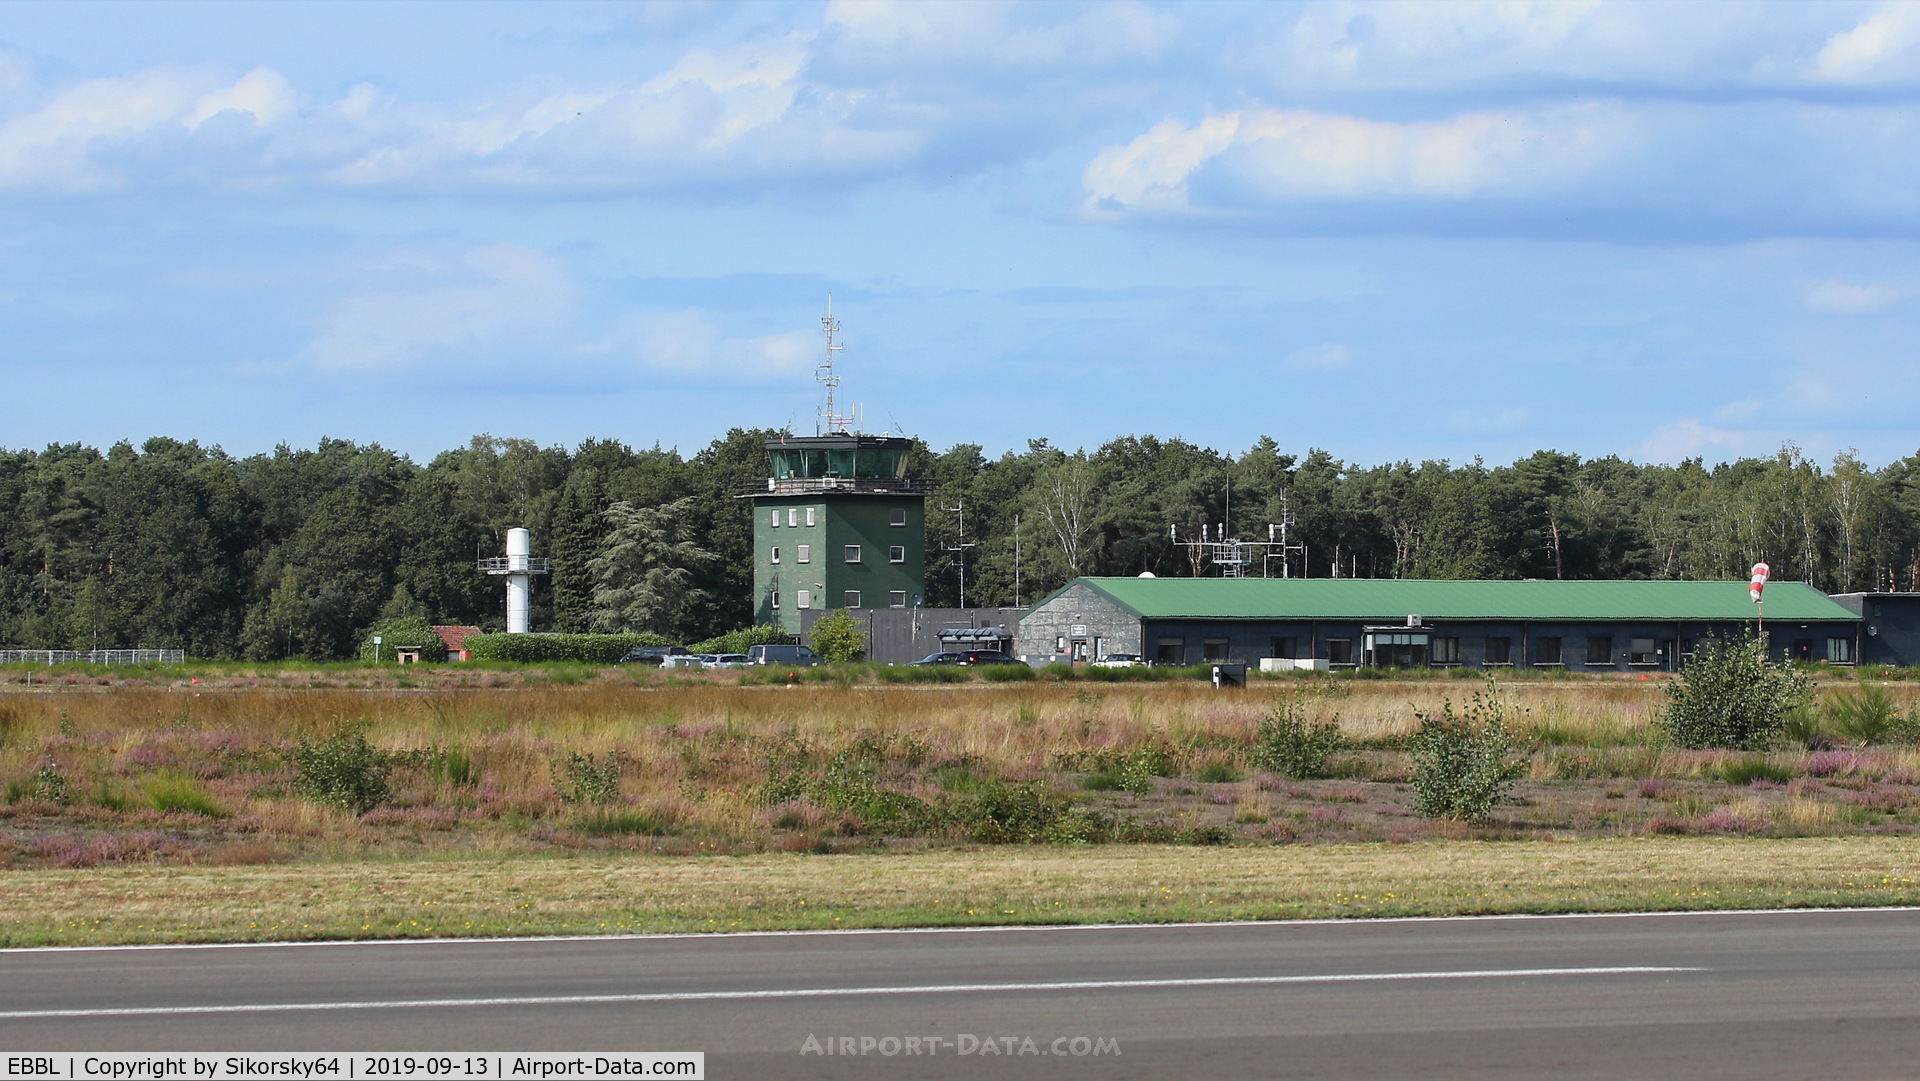 Kleine Brogel Air Base Airport, Kleine Brogel Belgium (EBBL) - Tower Kleine Brogel Airbase 13-09-2019.